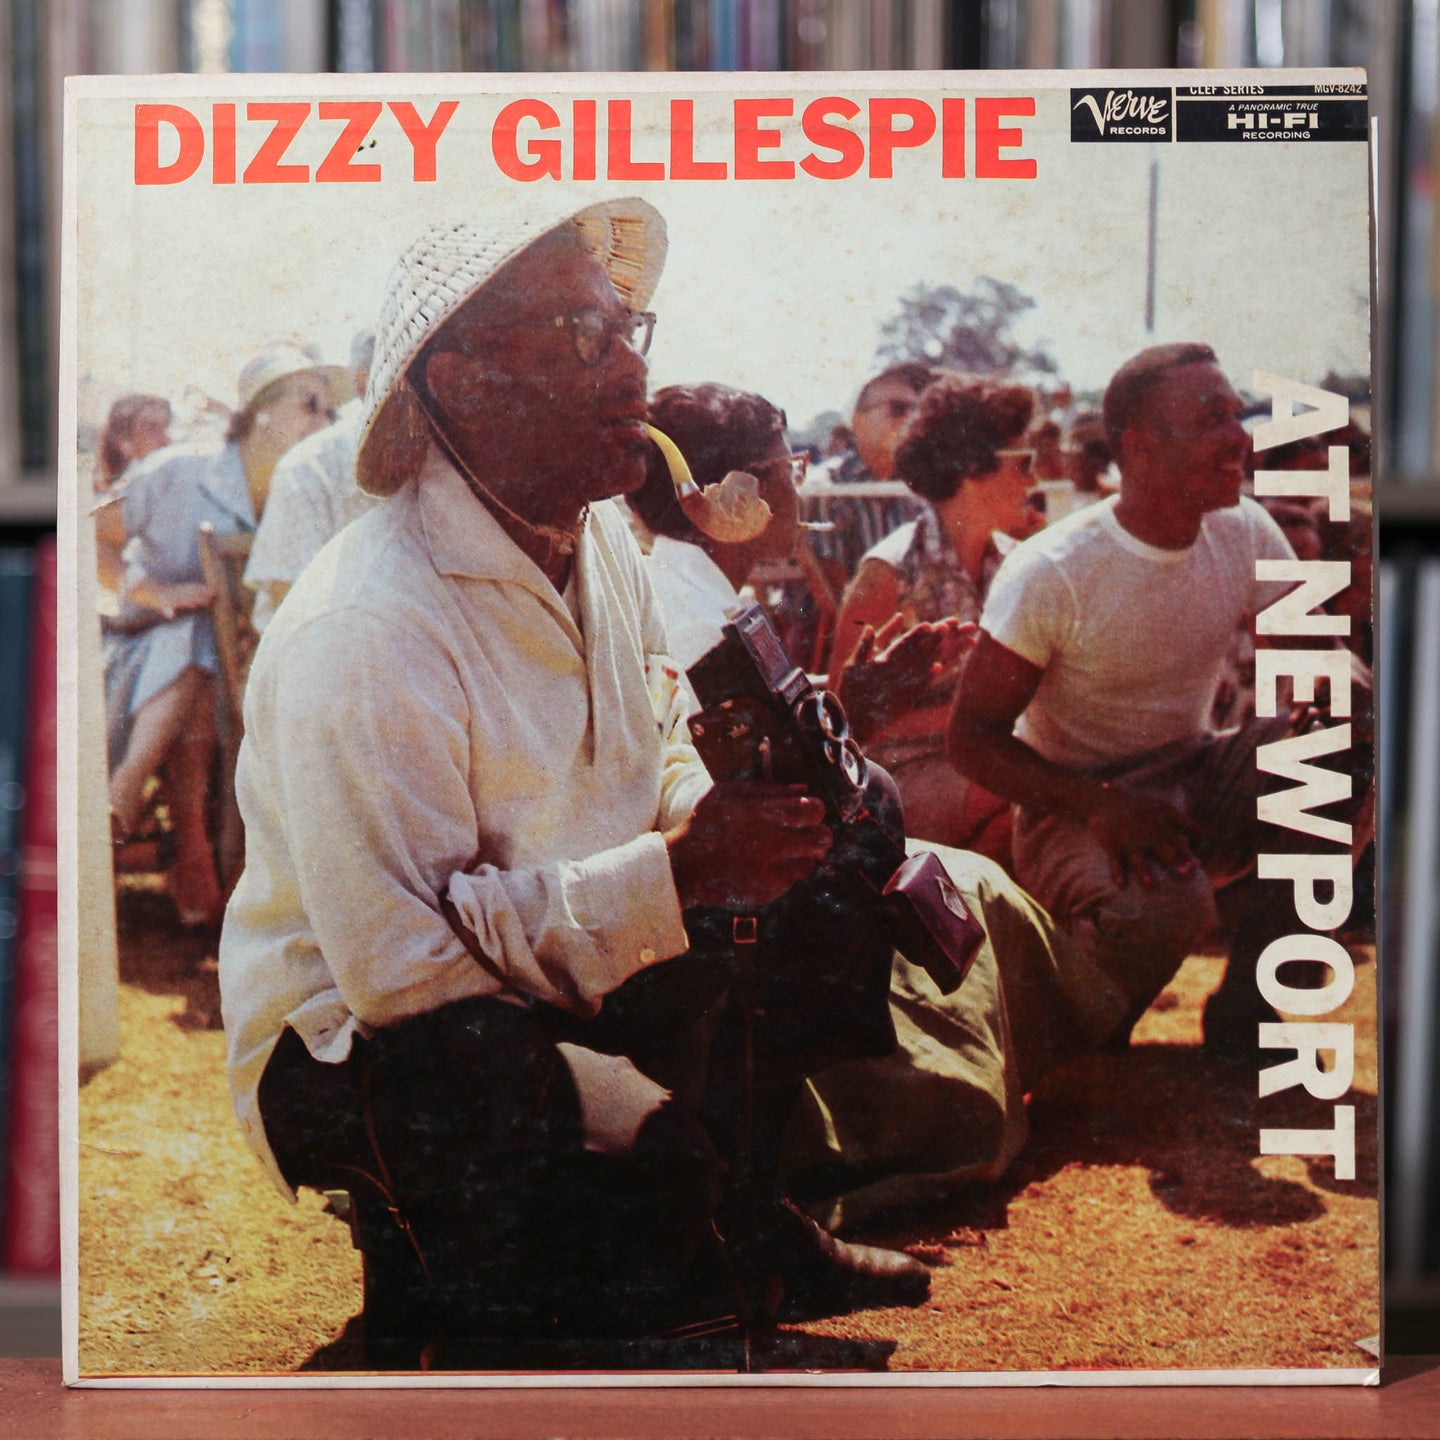 Dizzy Gillespie - At Newport - 1957 Verve, VG+/VG